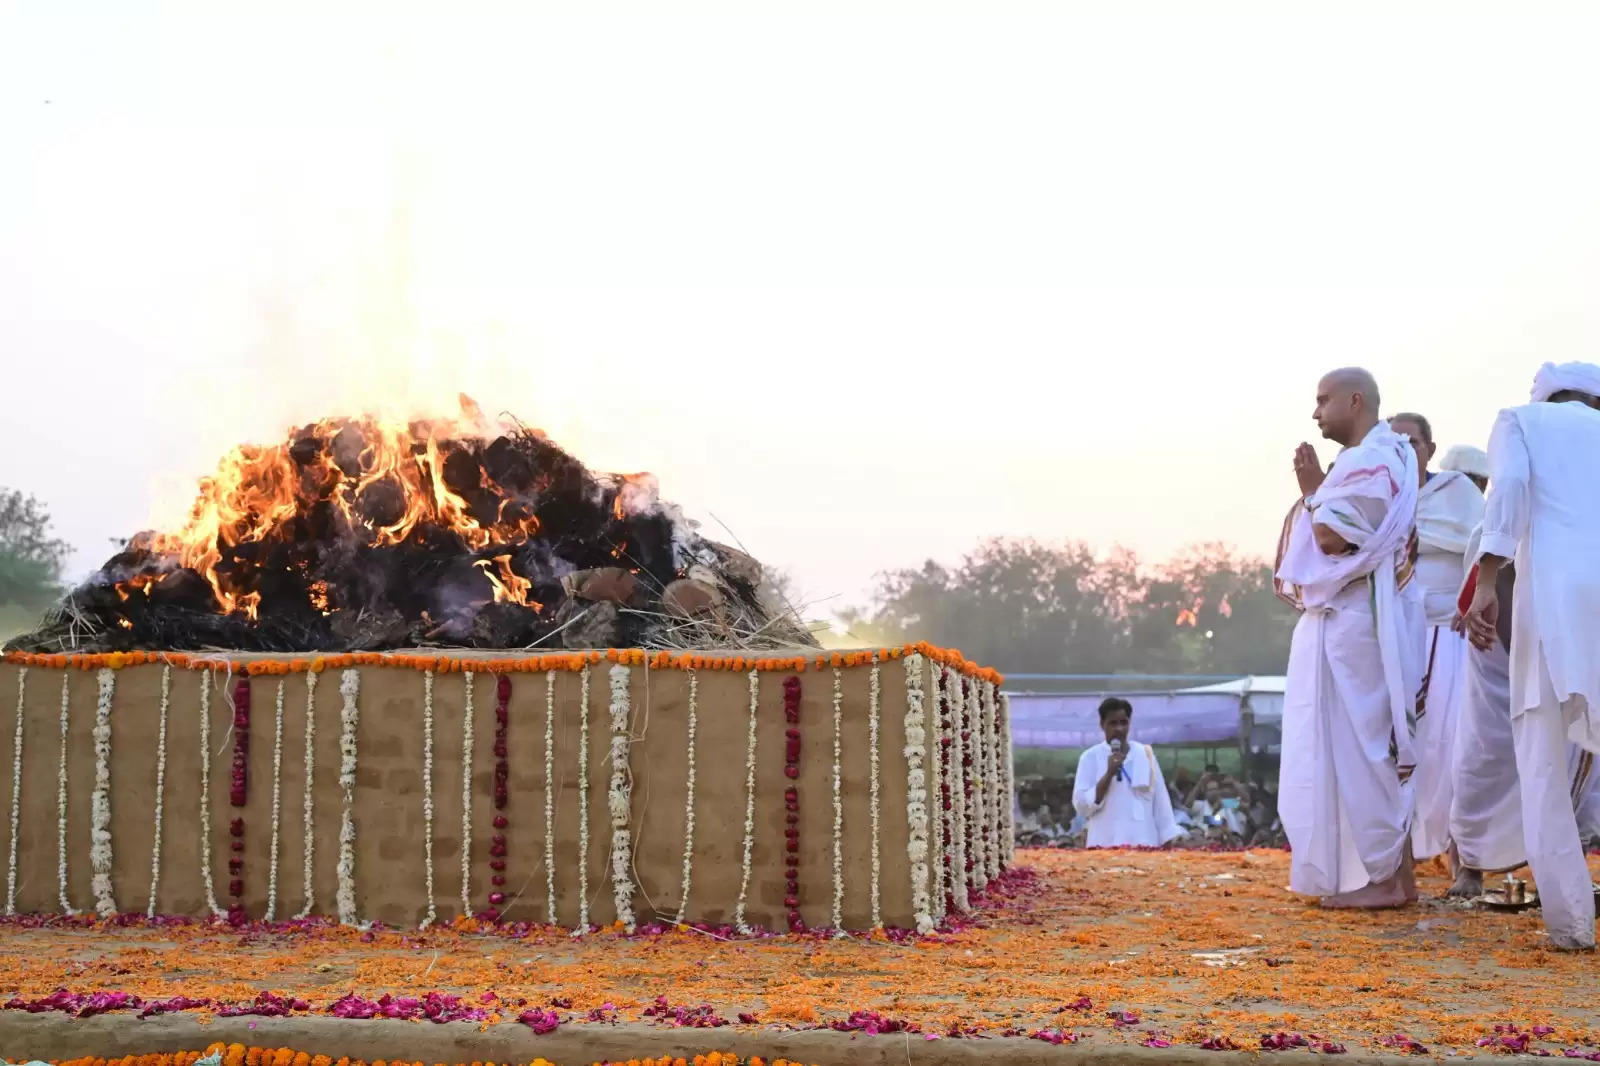 (अपडेट) ग्वालियर: राजमाता का राजसी परंपरा से हुआ अंतिम संस्कार, पुत्र ज्योतिरादित्य ने दी मुखाग्नि